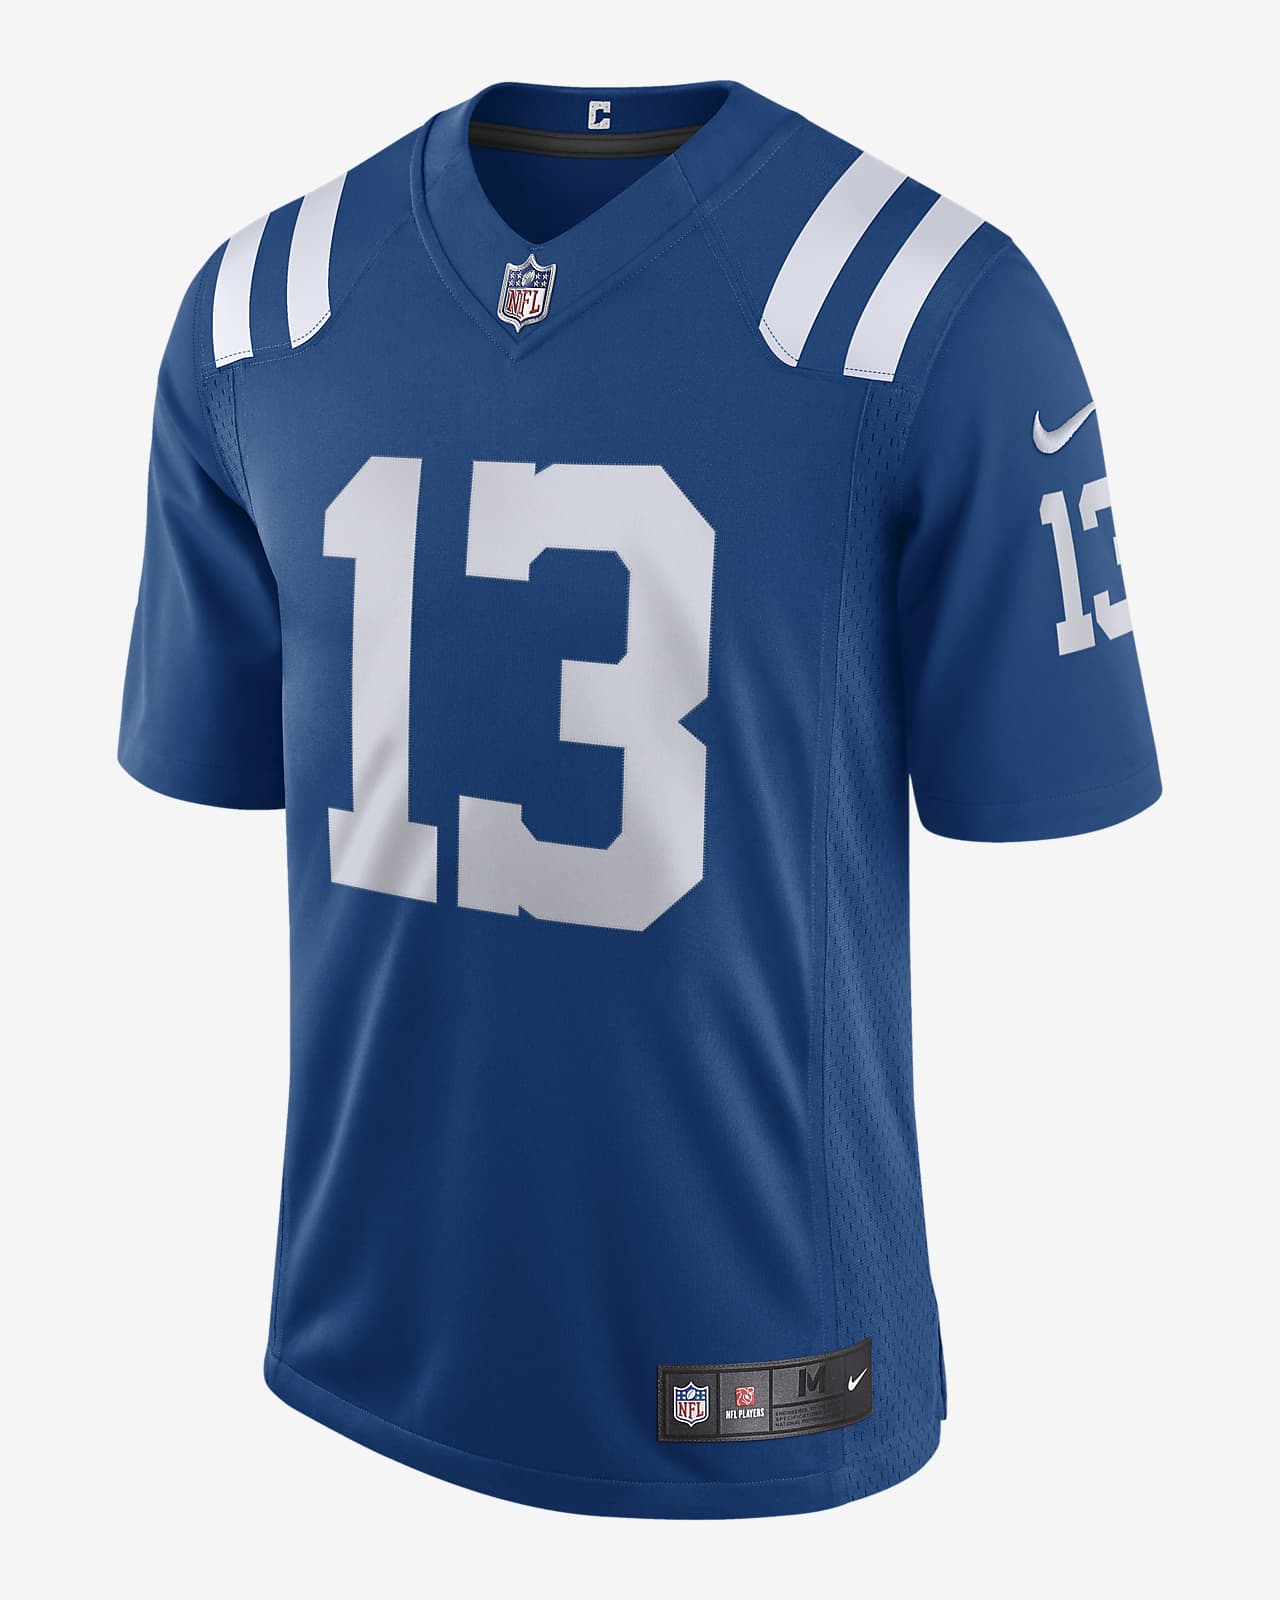 NFL Indianapolis Colts Vapor Untouchable (T.Y. Hilton) Men's Limited Football Jersey